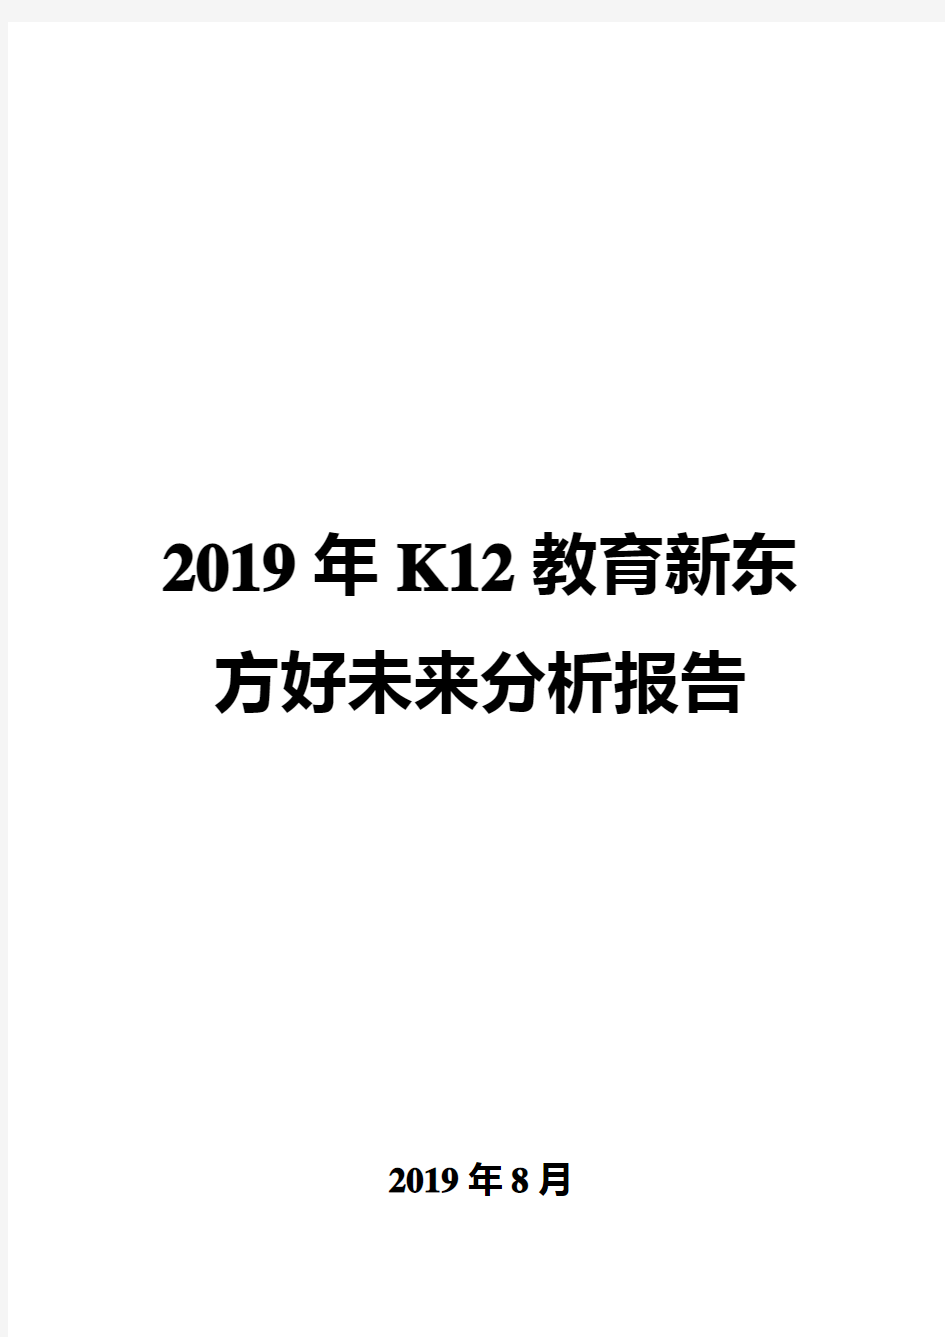 2019年K12教育新东方好未来分析报告